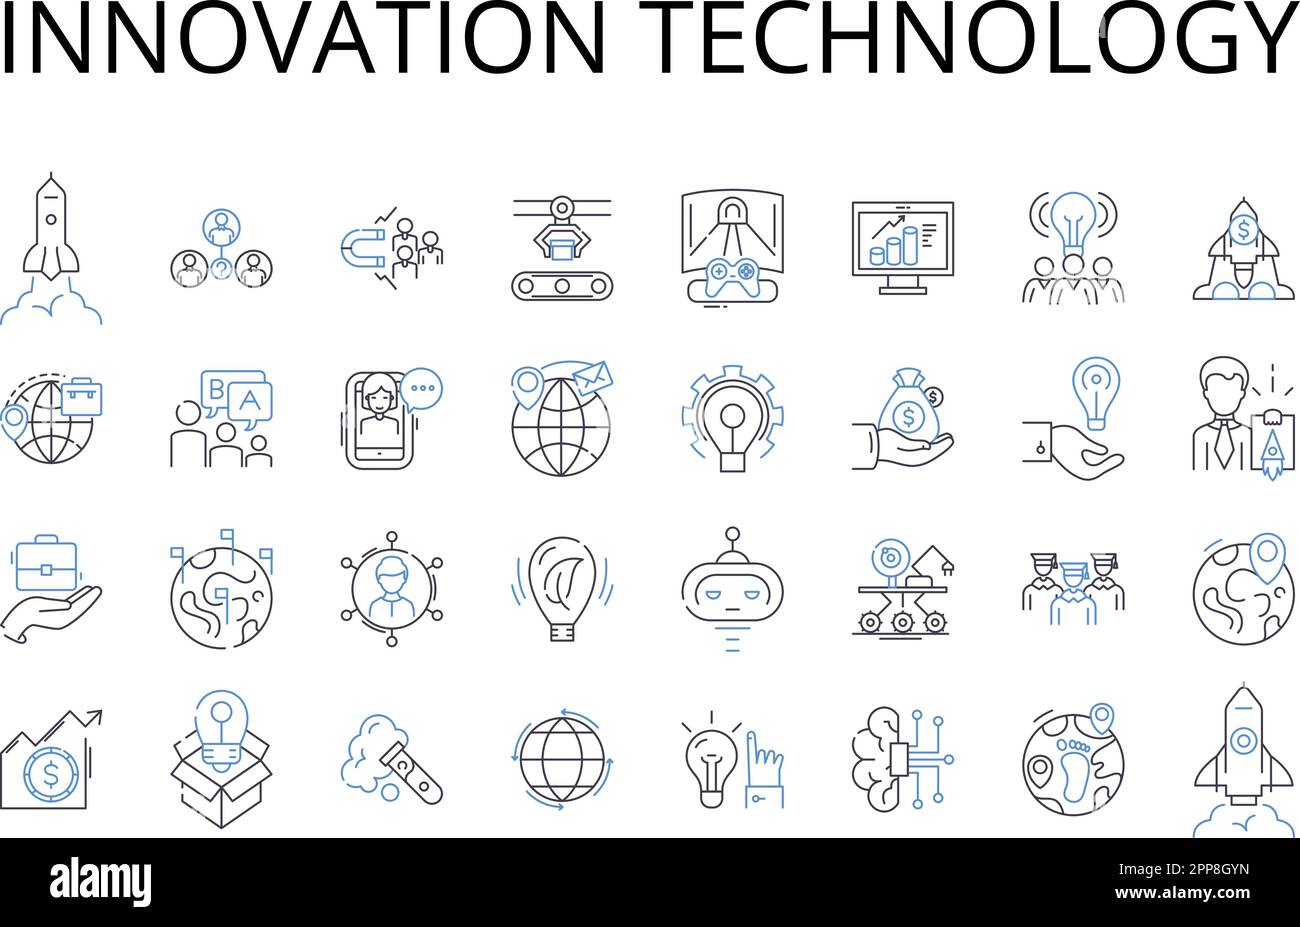 Icons-Kollektion der Innovation Technology Line. Kreativität Kunst, Wissensintelligenz, Fortschritt, Vision Vorausschau, Chance auf Chancen Stock Vektor